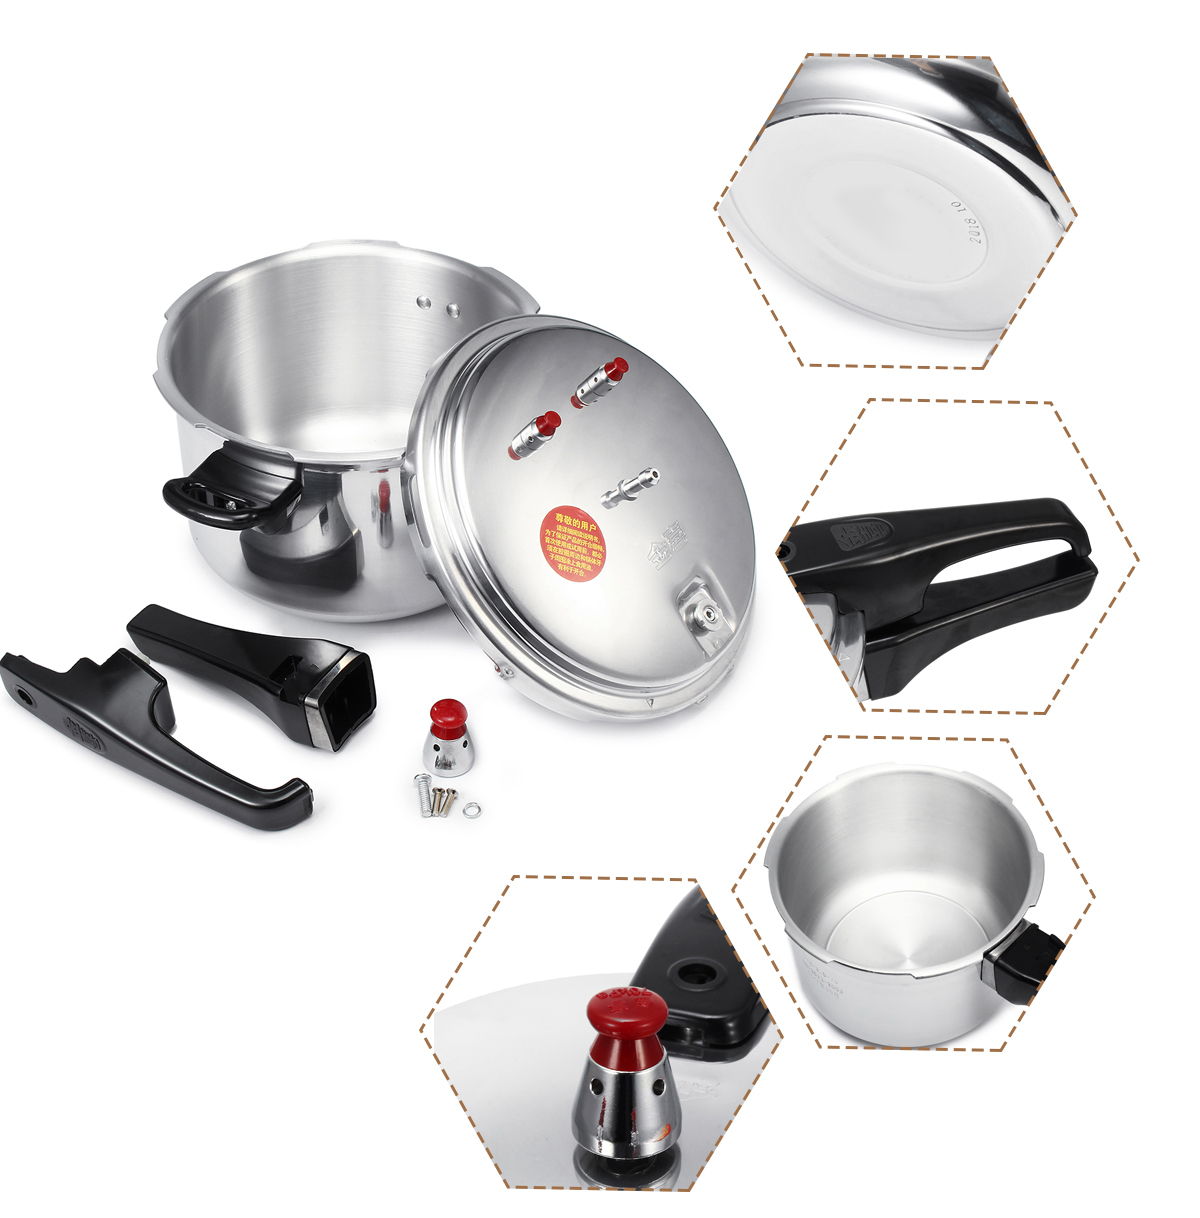 4L5L-Pressure-Cooker-Commercial-Aluminum-Alloy-Pressure-Cooker-1720053-8